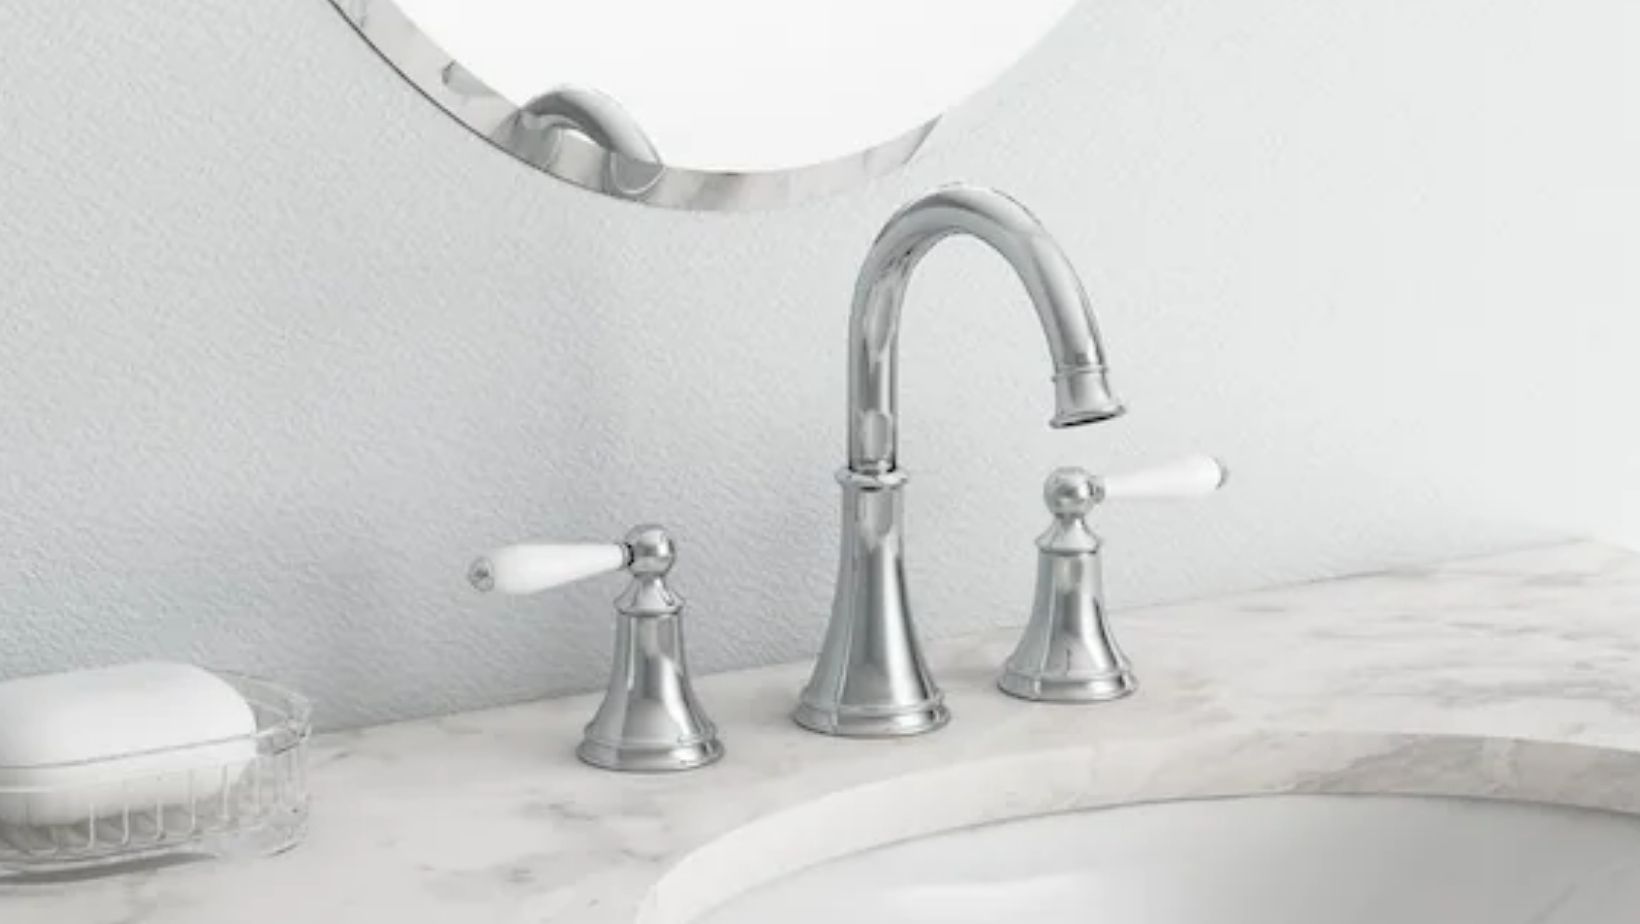 Do Chrome Bathroom Faucets Look Trendy?